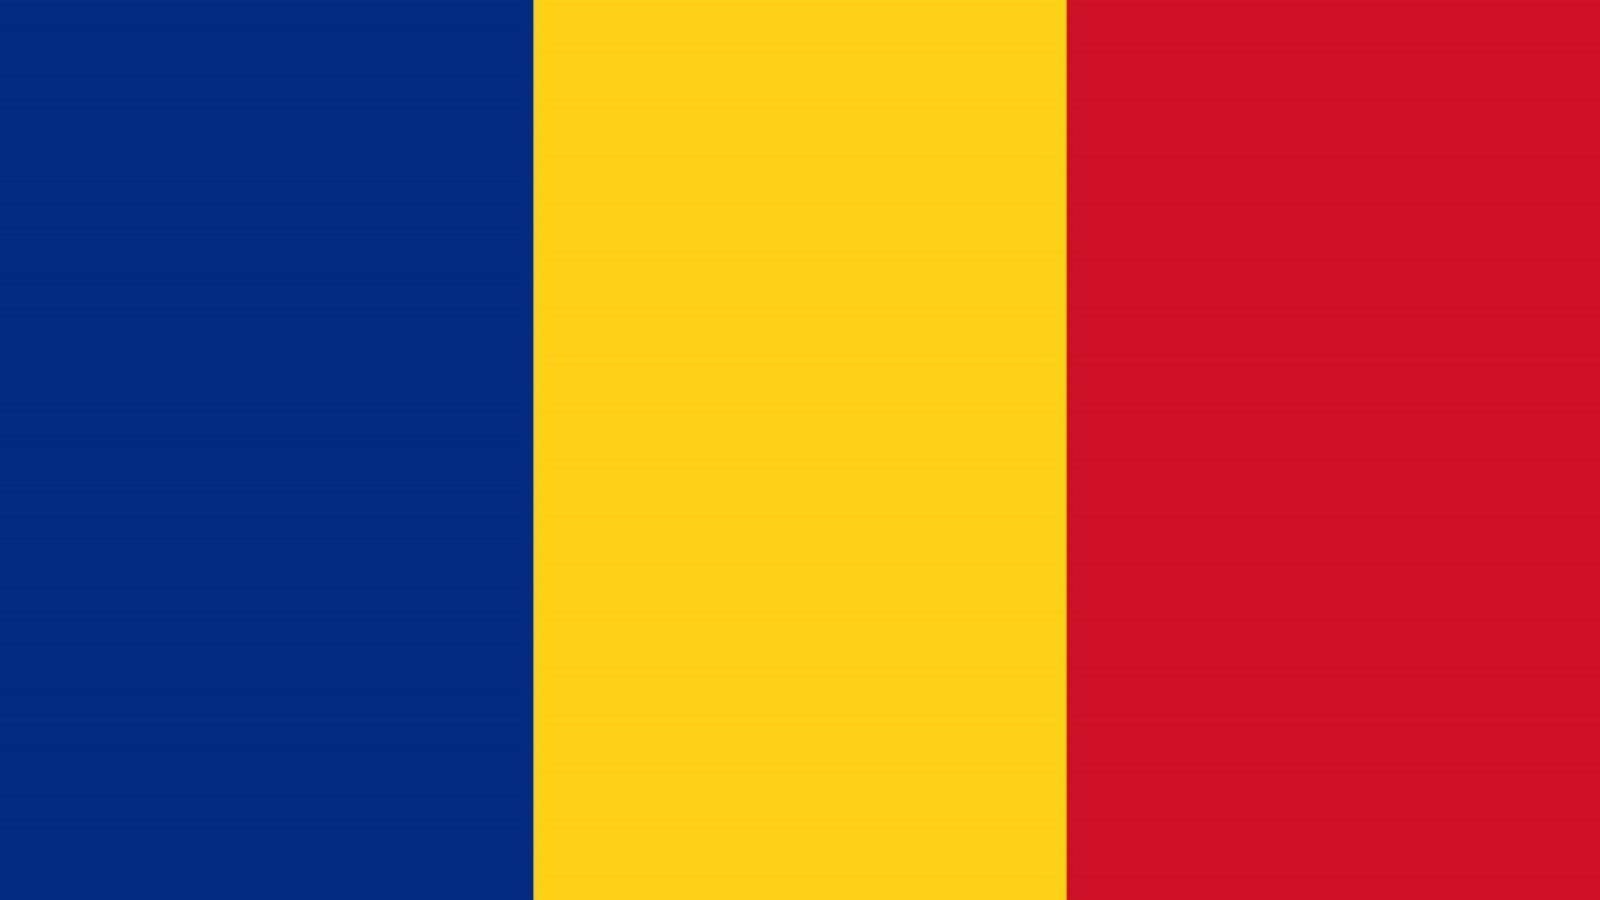 Romanian hallitus 1. elokuuta Mahdollinen päivämäärä naamiosta luopumiselle